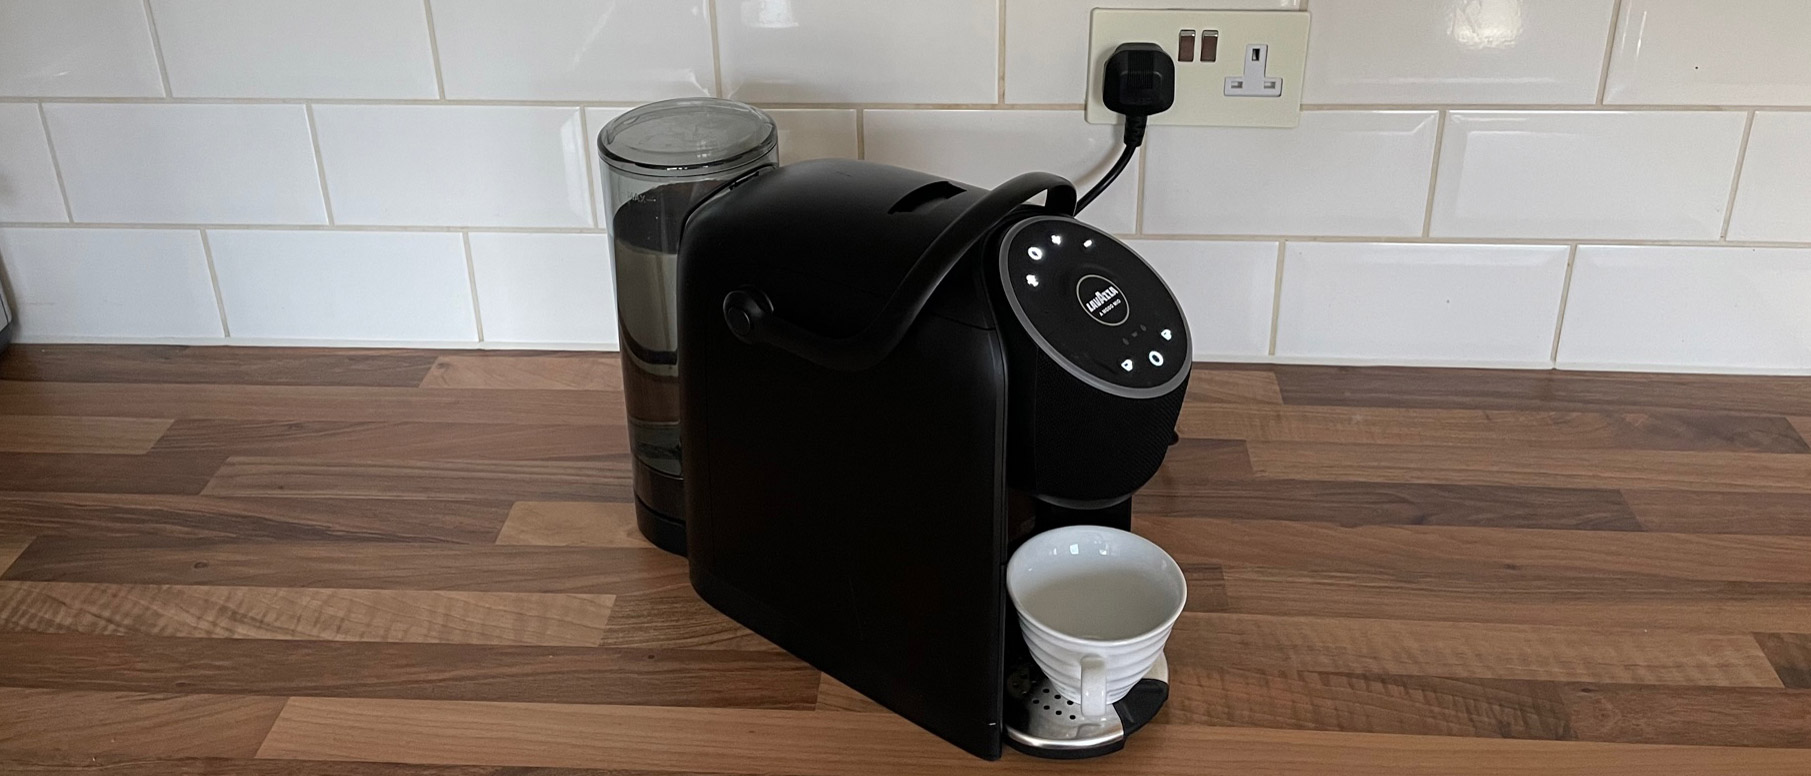 Lavazza A Modo Mio Voicy review: the first espresso machine with